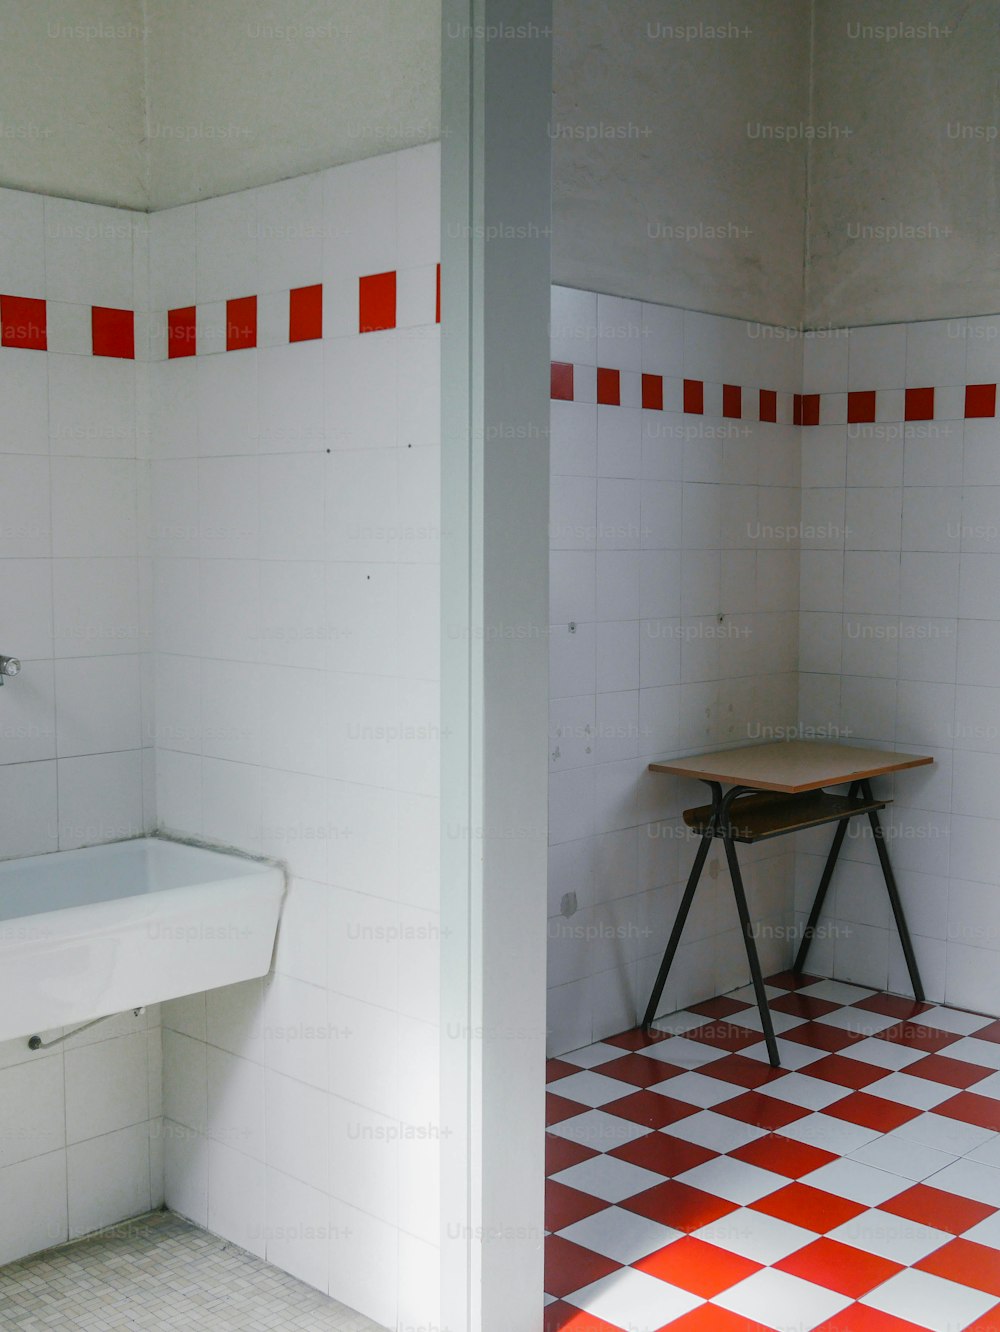 un bagno con pavimento a scacchi rossi e bianchi